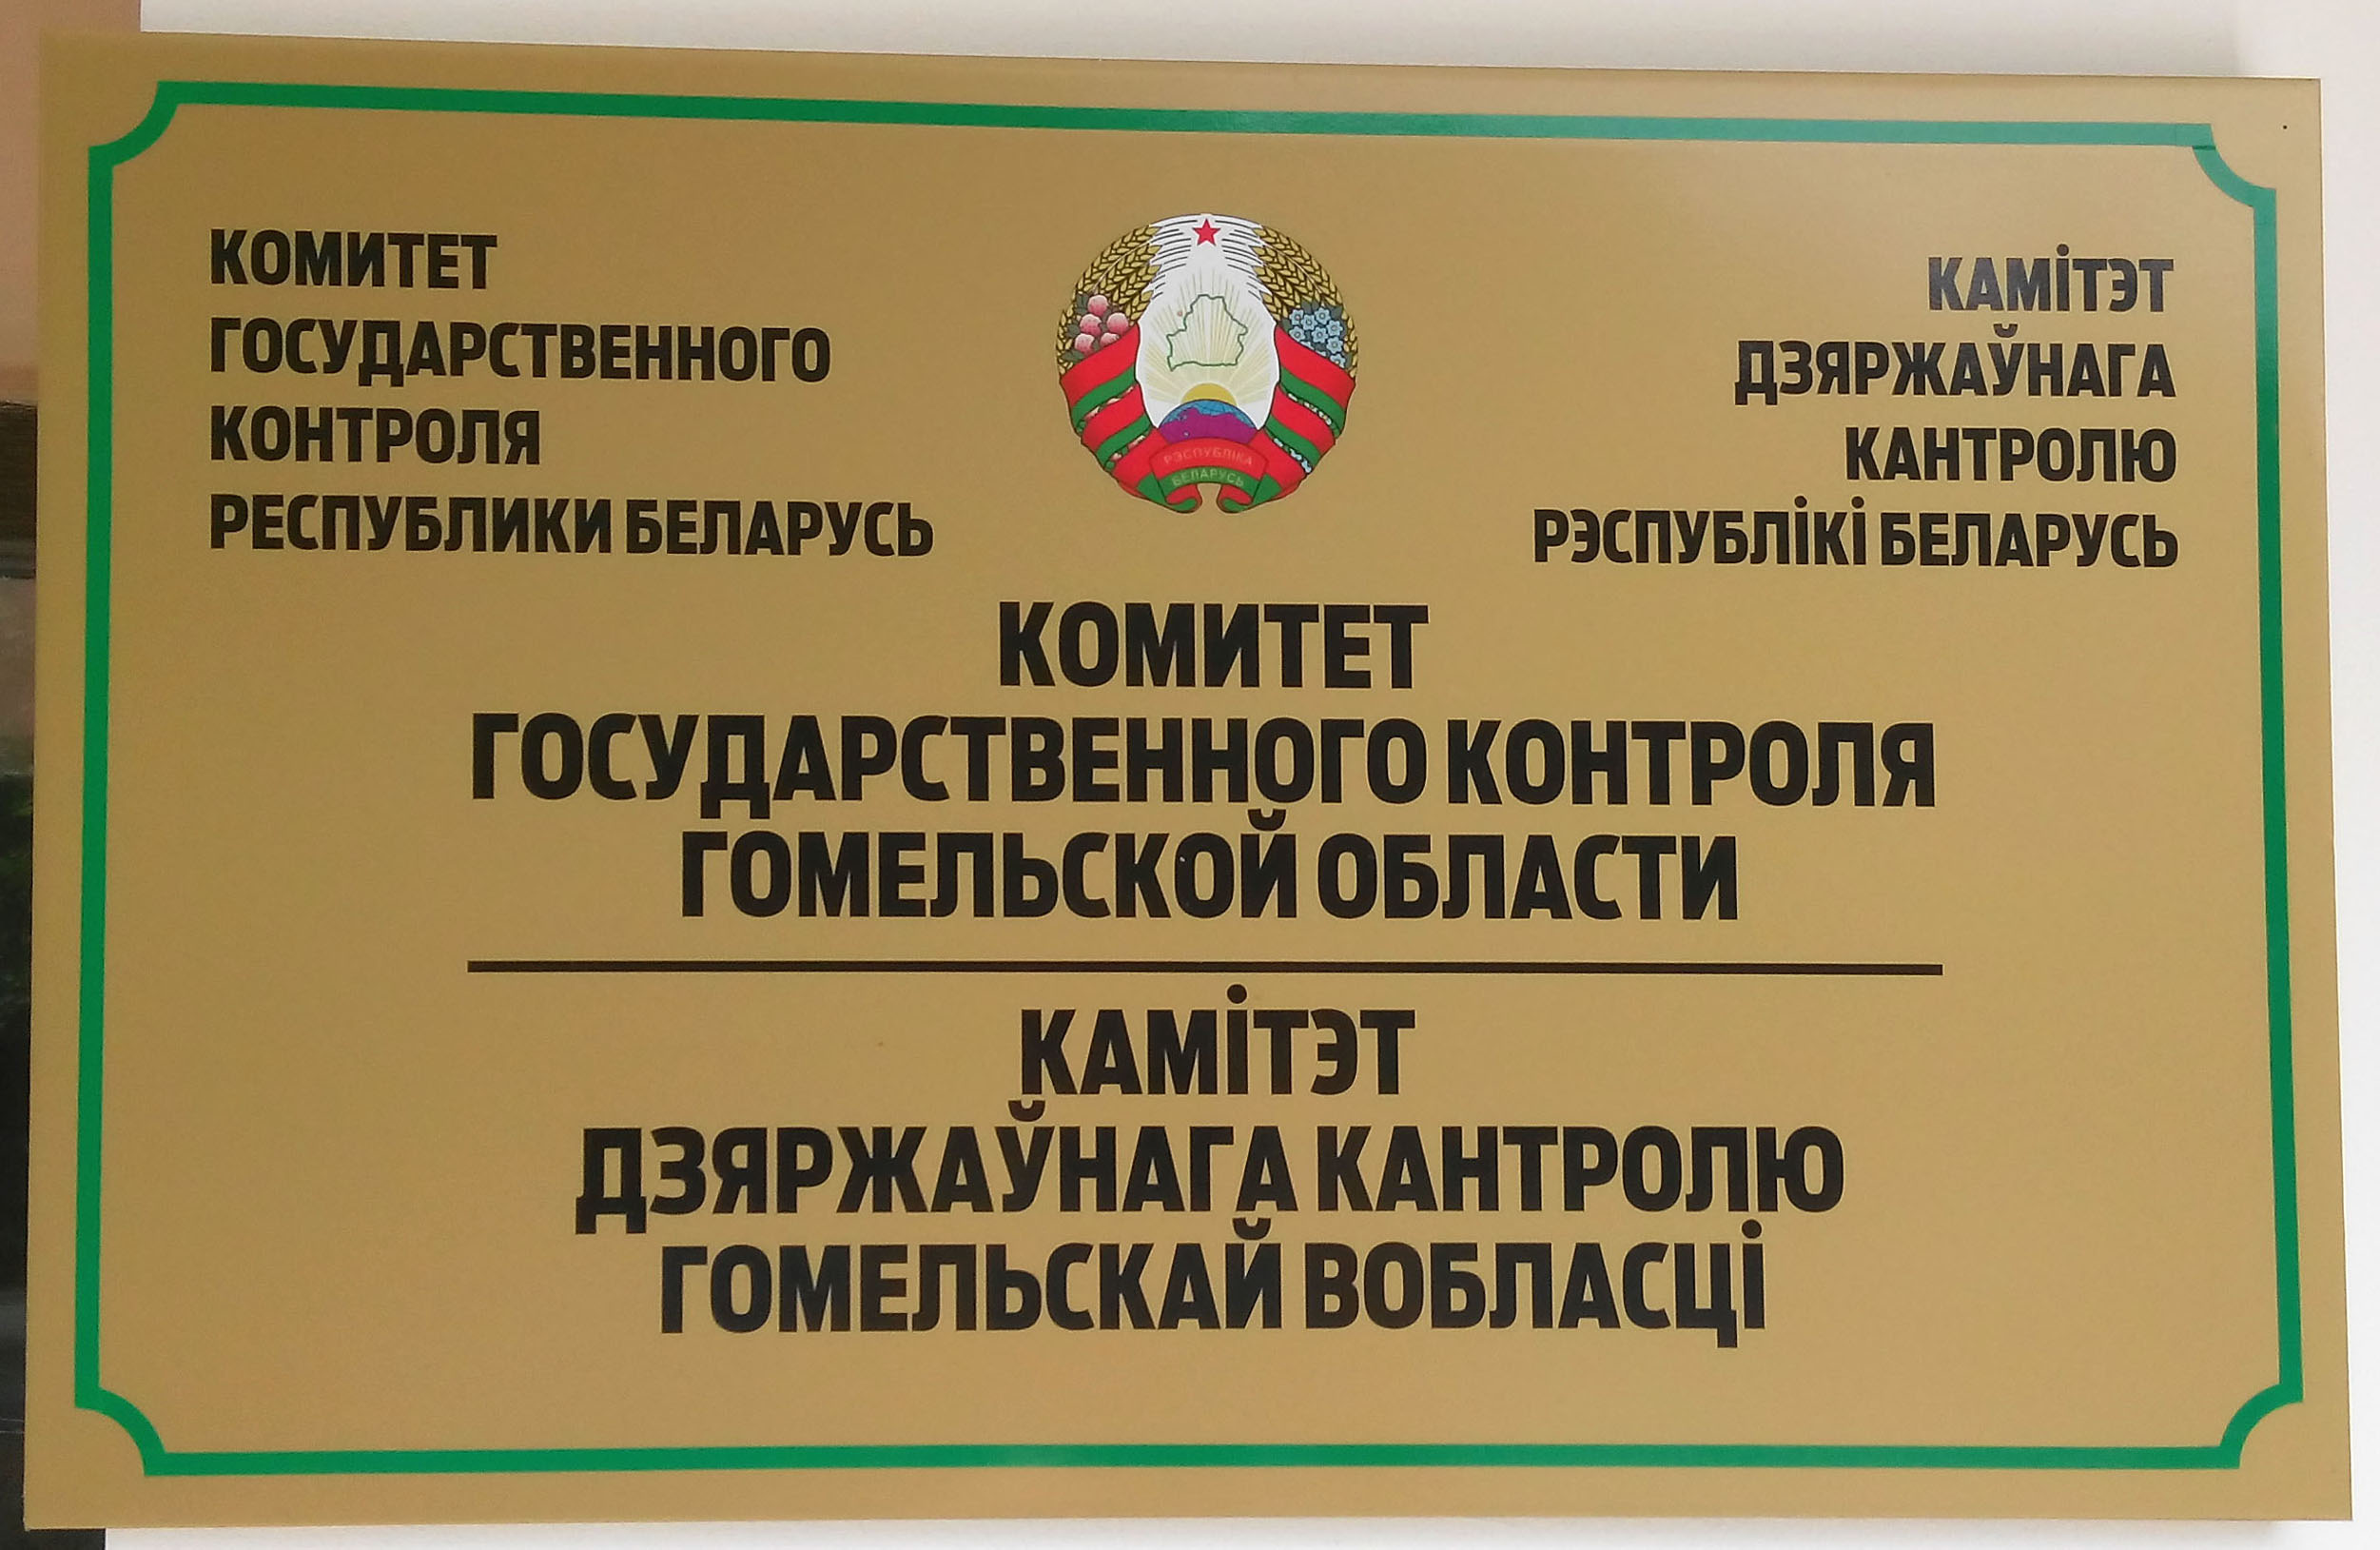 КГК Гомельской области выявил нарушения при осуществлении государственных закупок в системе образования Рогачевского района